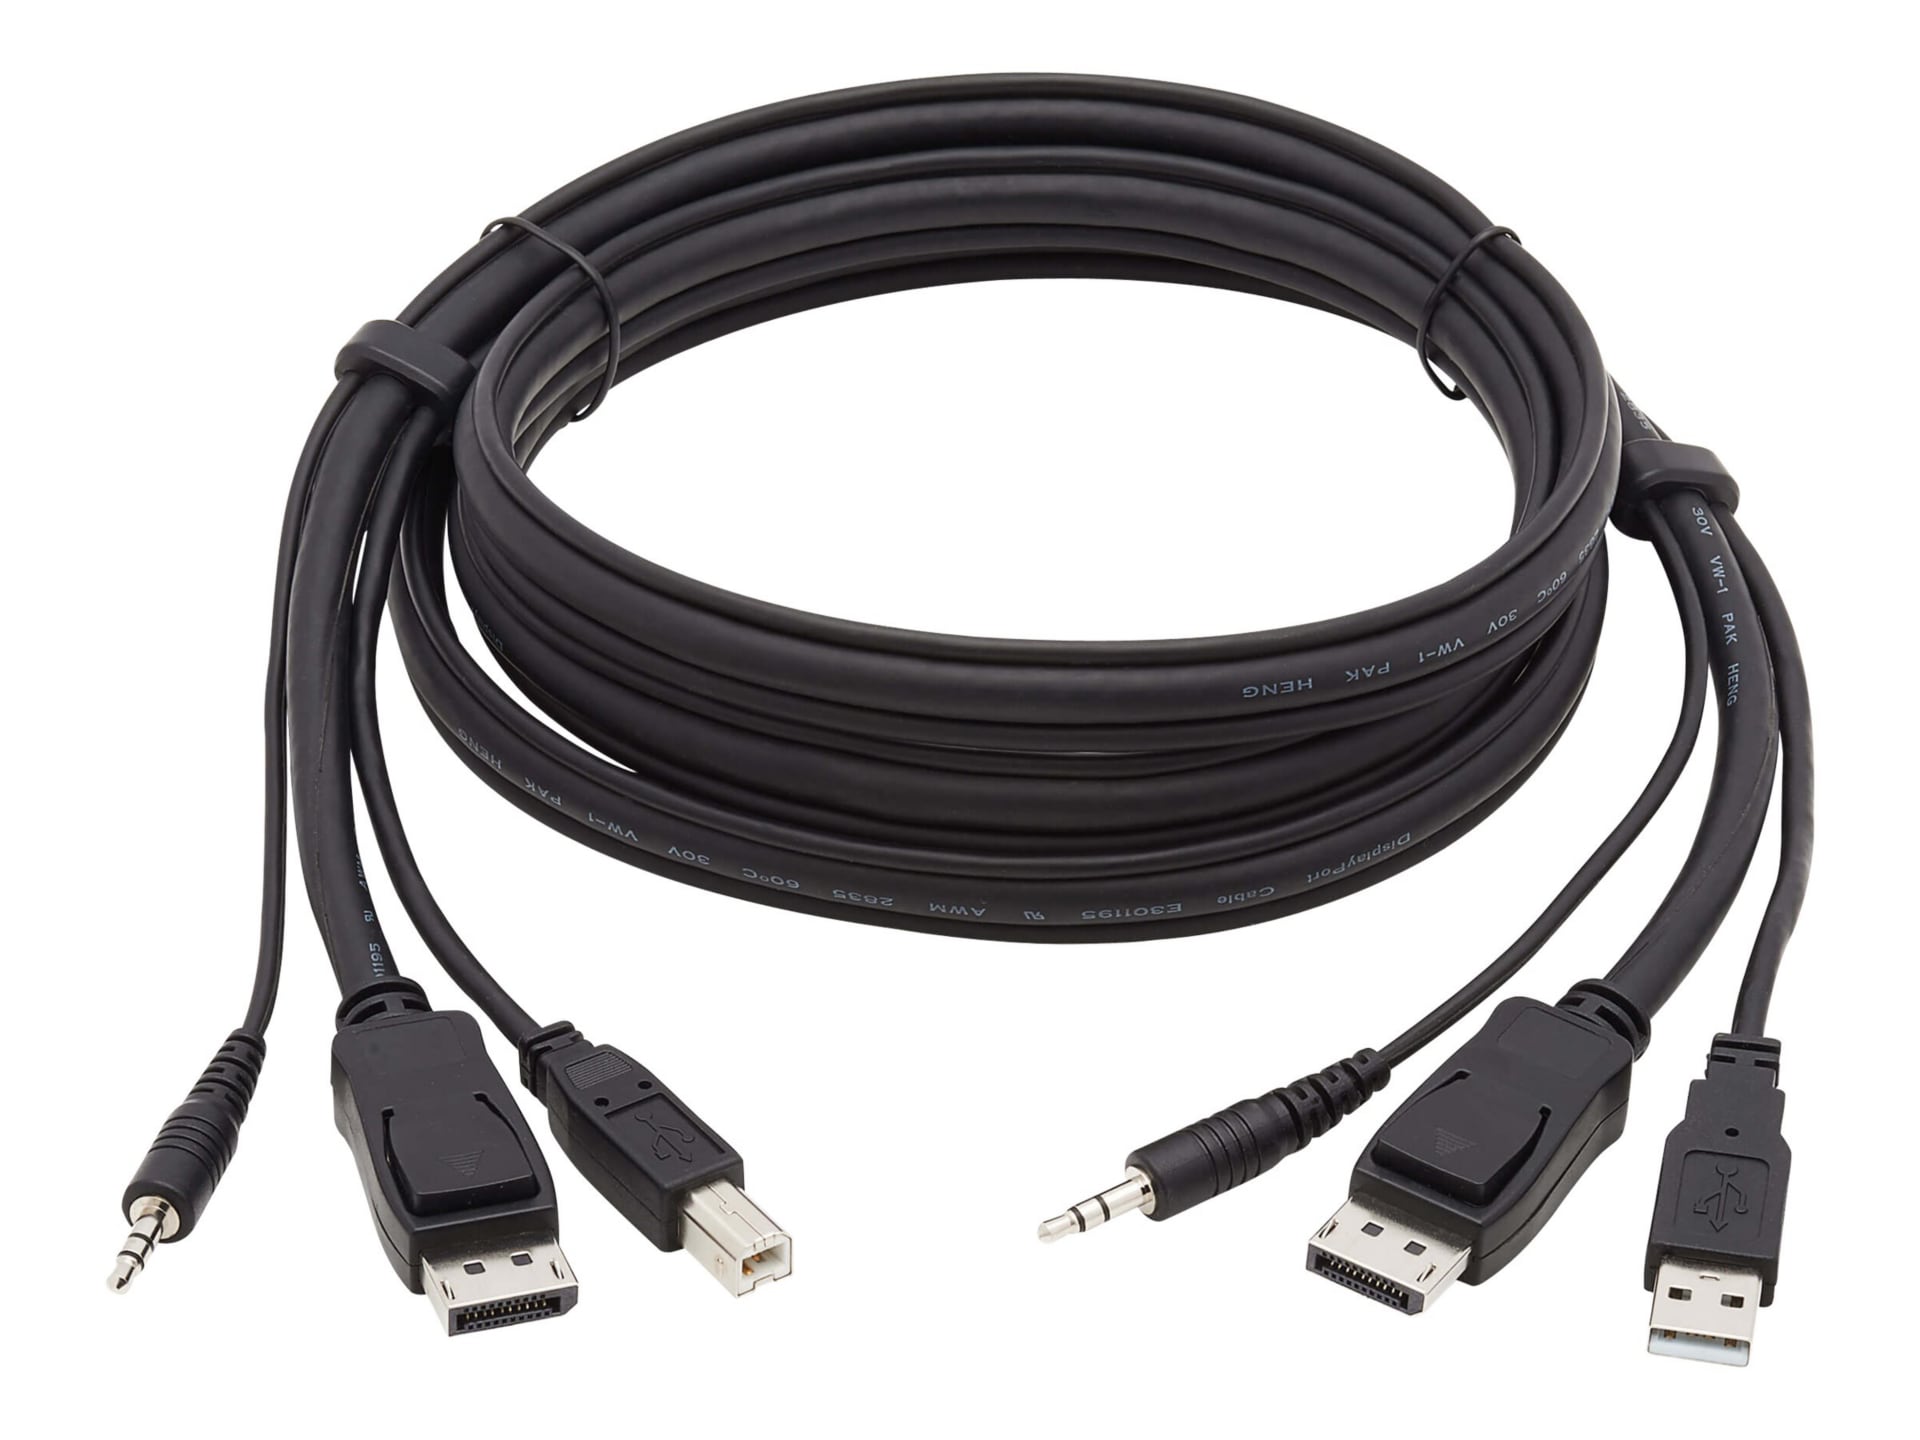 Tripp Lite DisplayPort KVM Cable Kit, 3 in 1 - 4K DisplayPort, USB, 3.5 mm